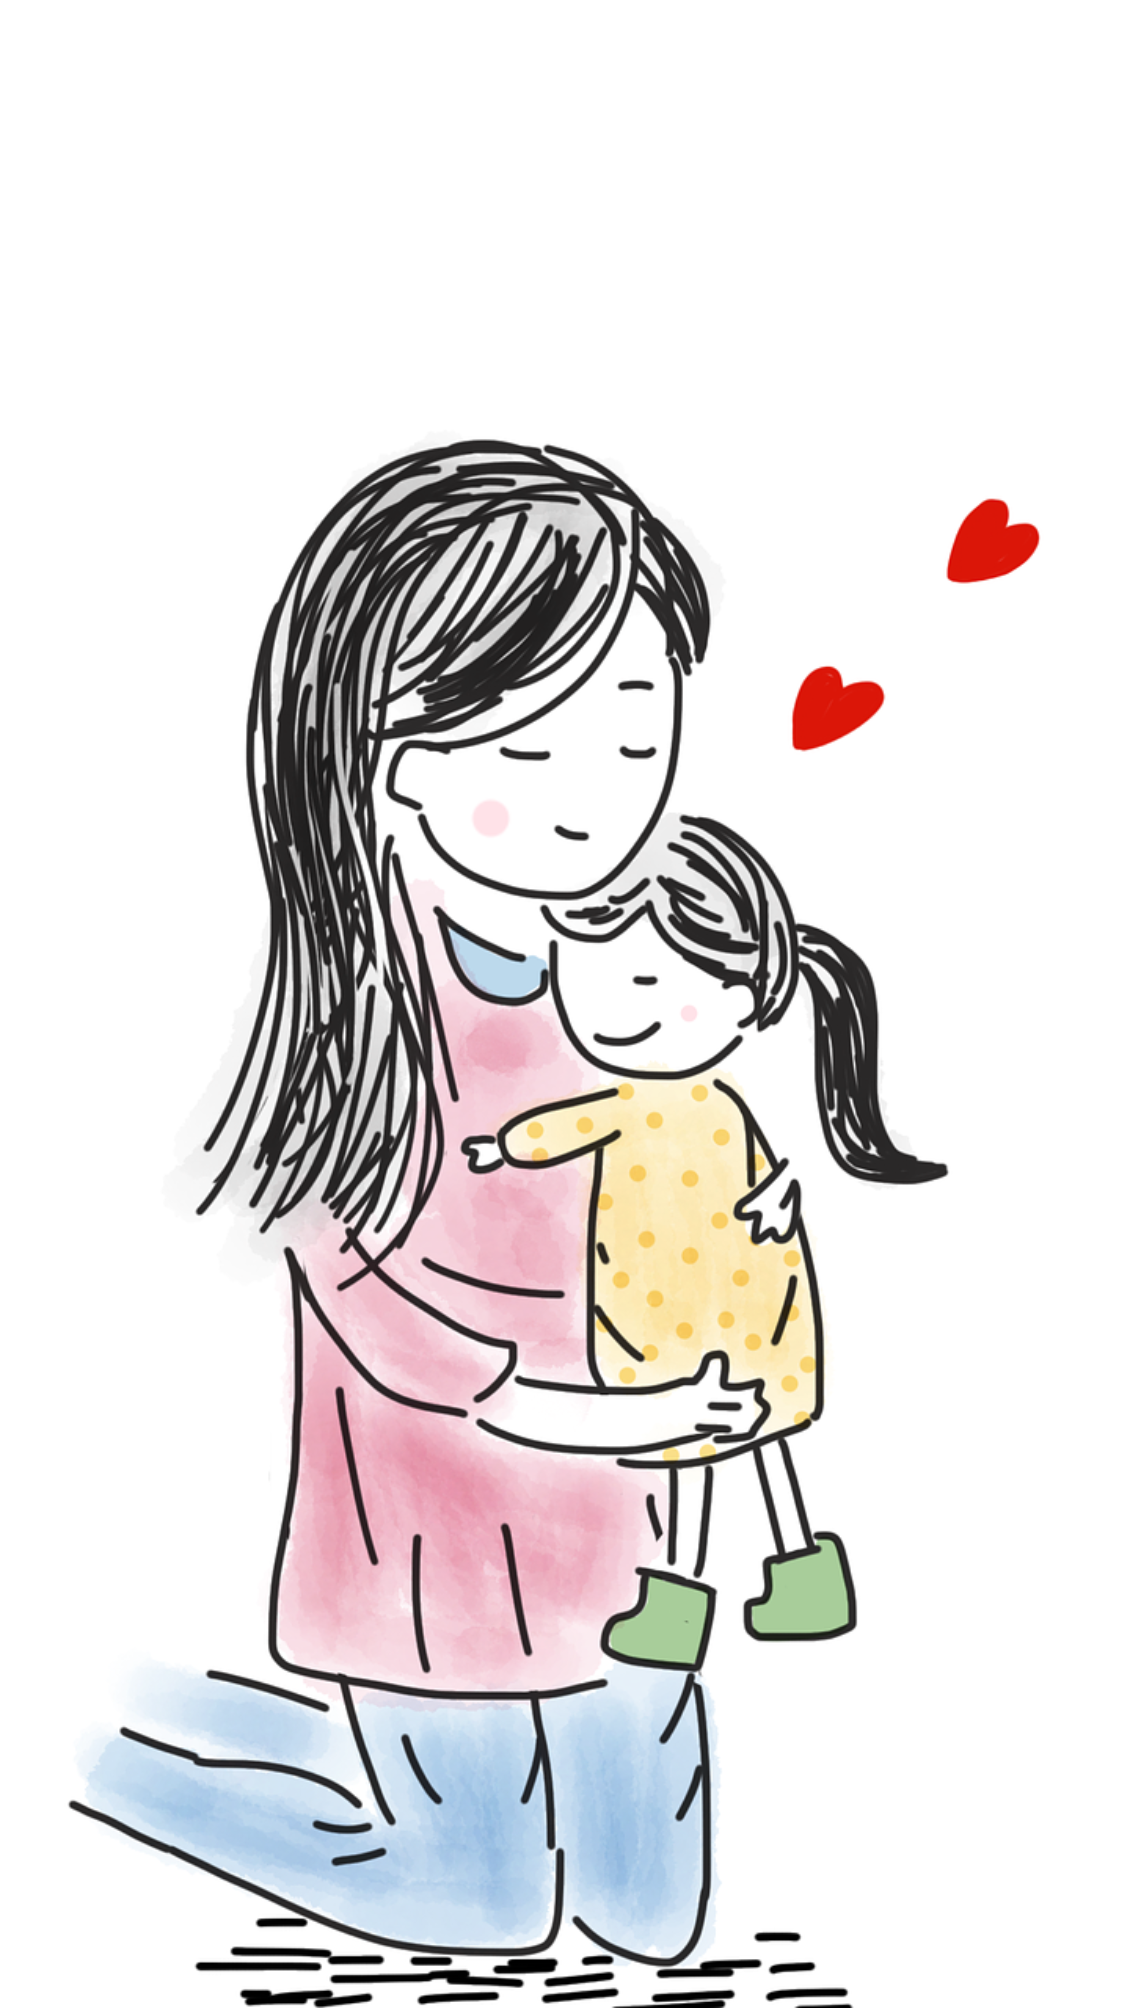 Post post parent. Рисунок для мамы. Любовь к ребенку. Мать с ребенком рисунок. Детские рисунки мамы.